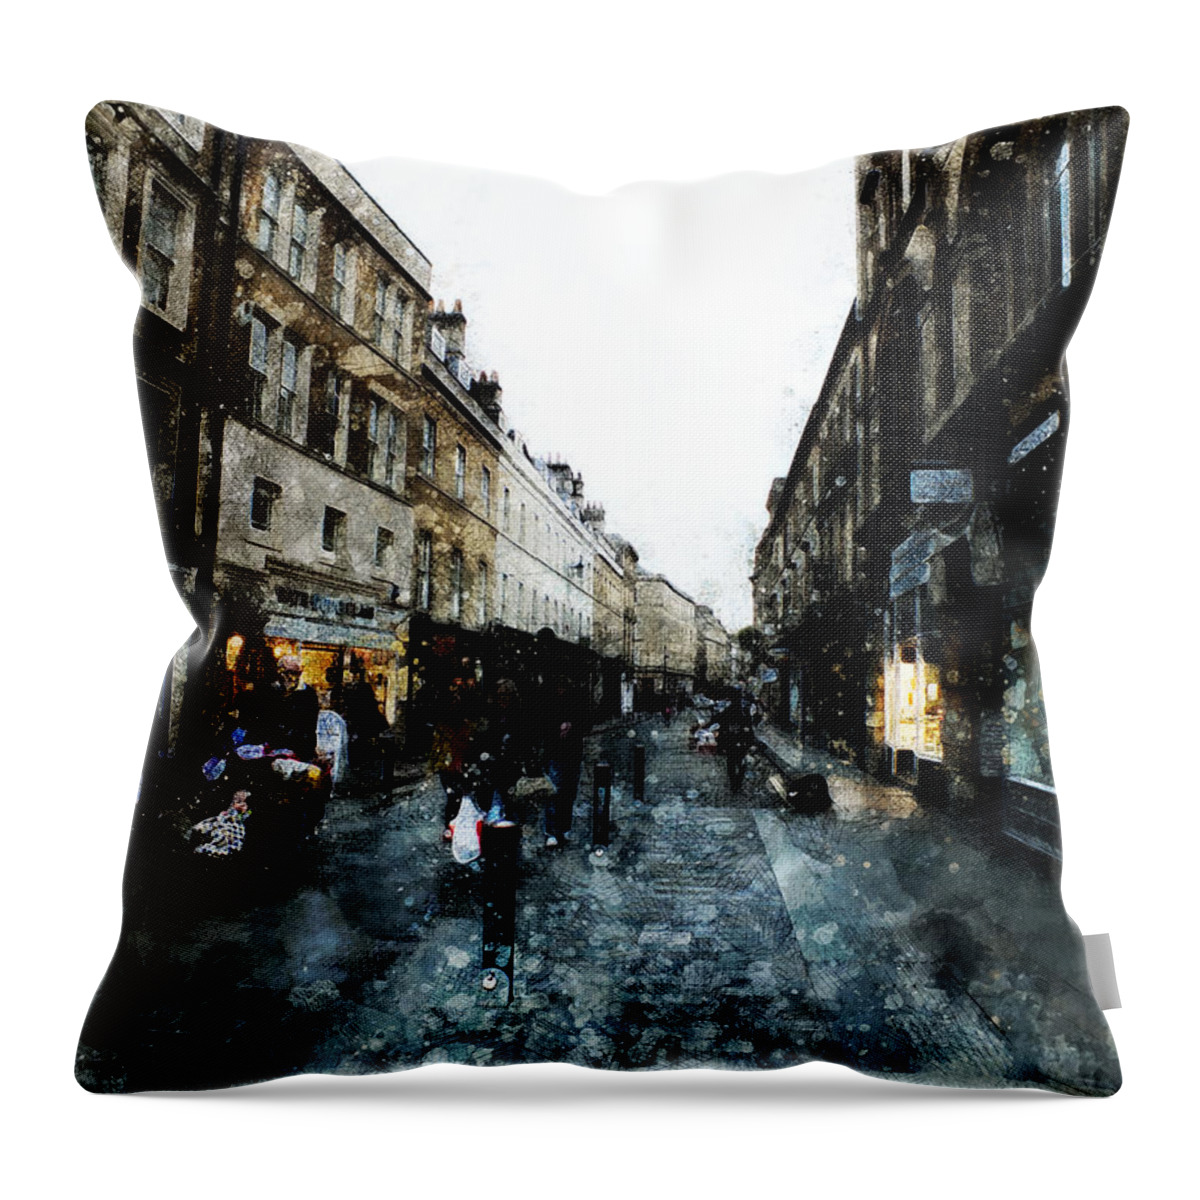 Street Throw Pillow featuring the digital art Street View by Art Di